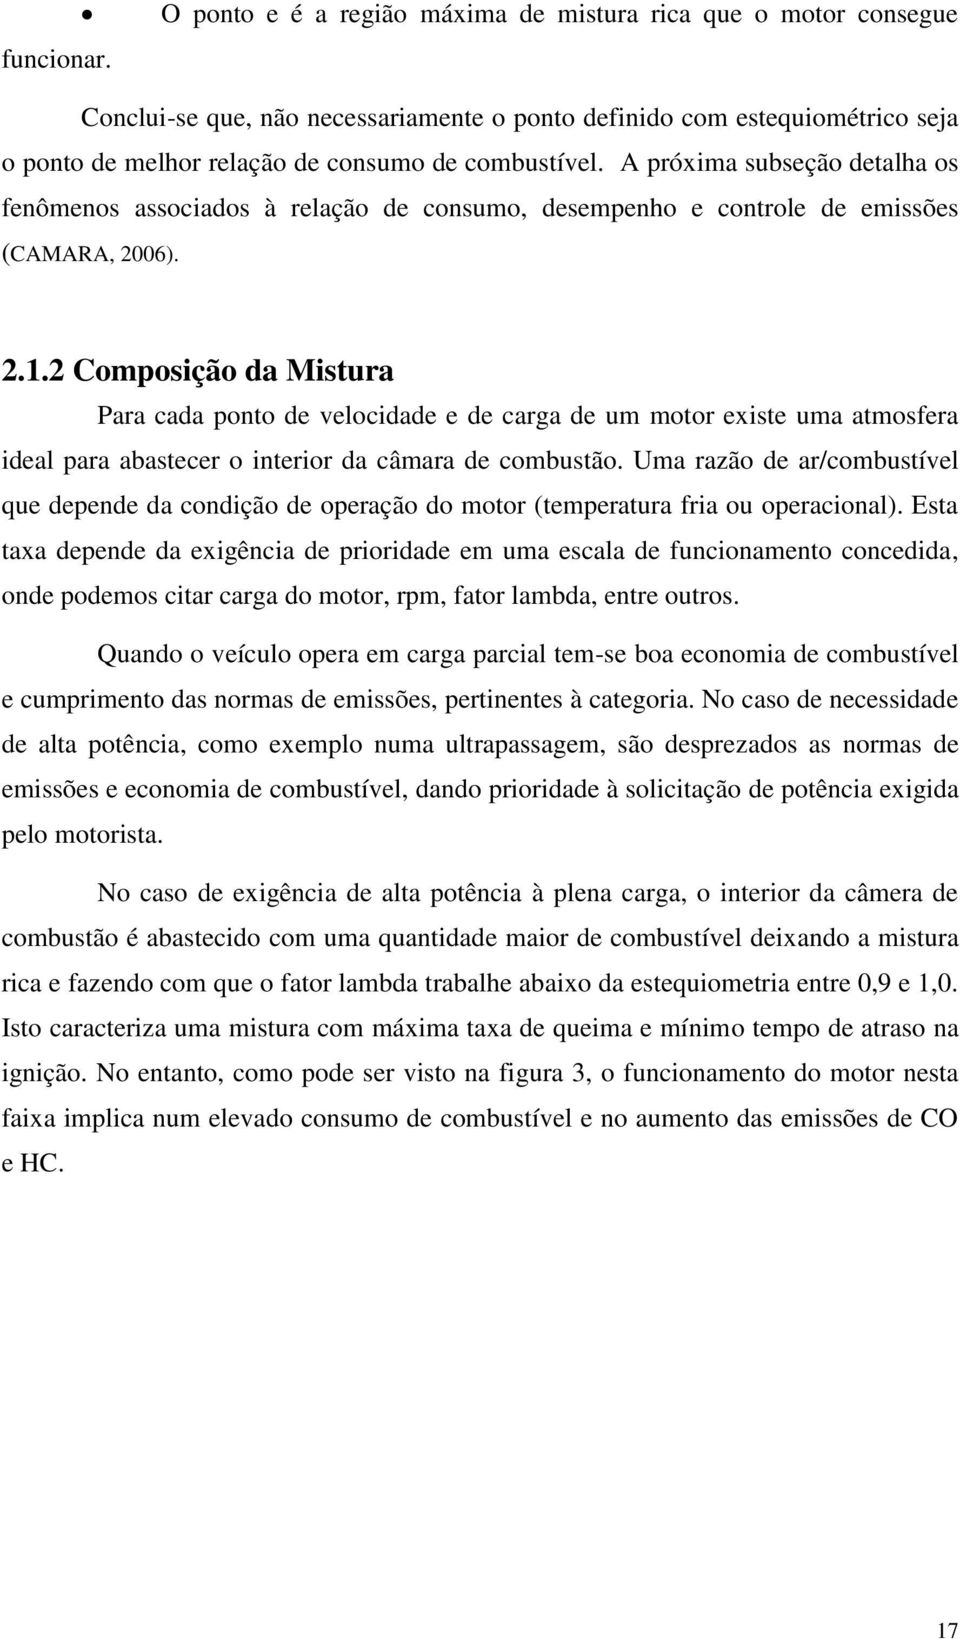 A próxima subseção detalha os fenômenos associados à relação de consumo, desempenho e controle de emissões (CAMARA, 2006). 2.1.